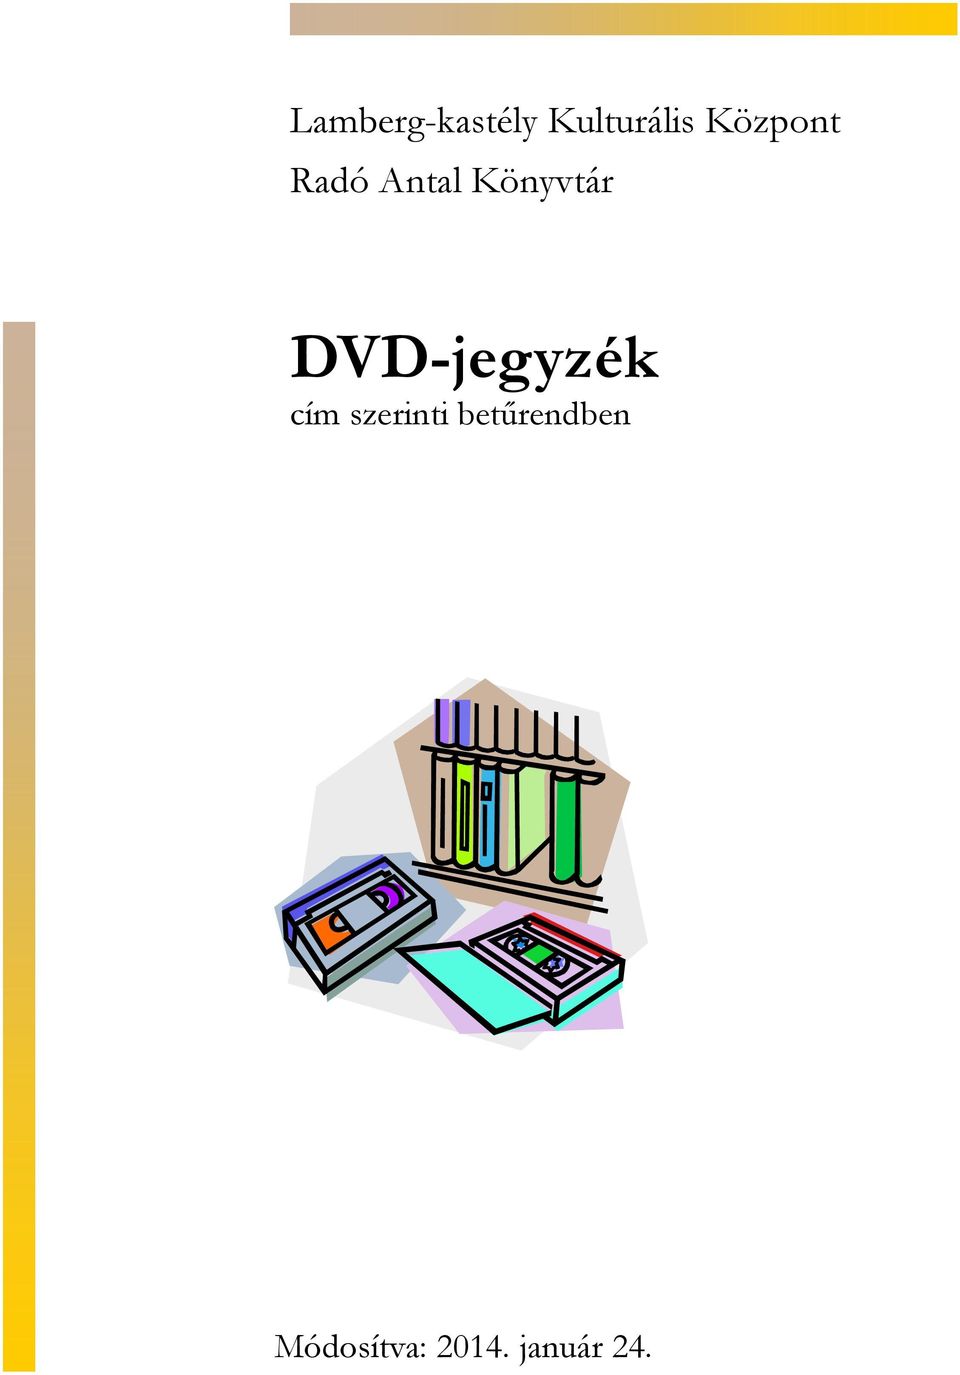 DVD-jegyzék cím szerinti betűrendben - PDF Ingyenes letöltés